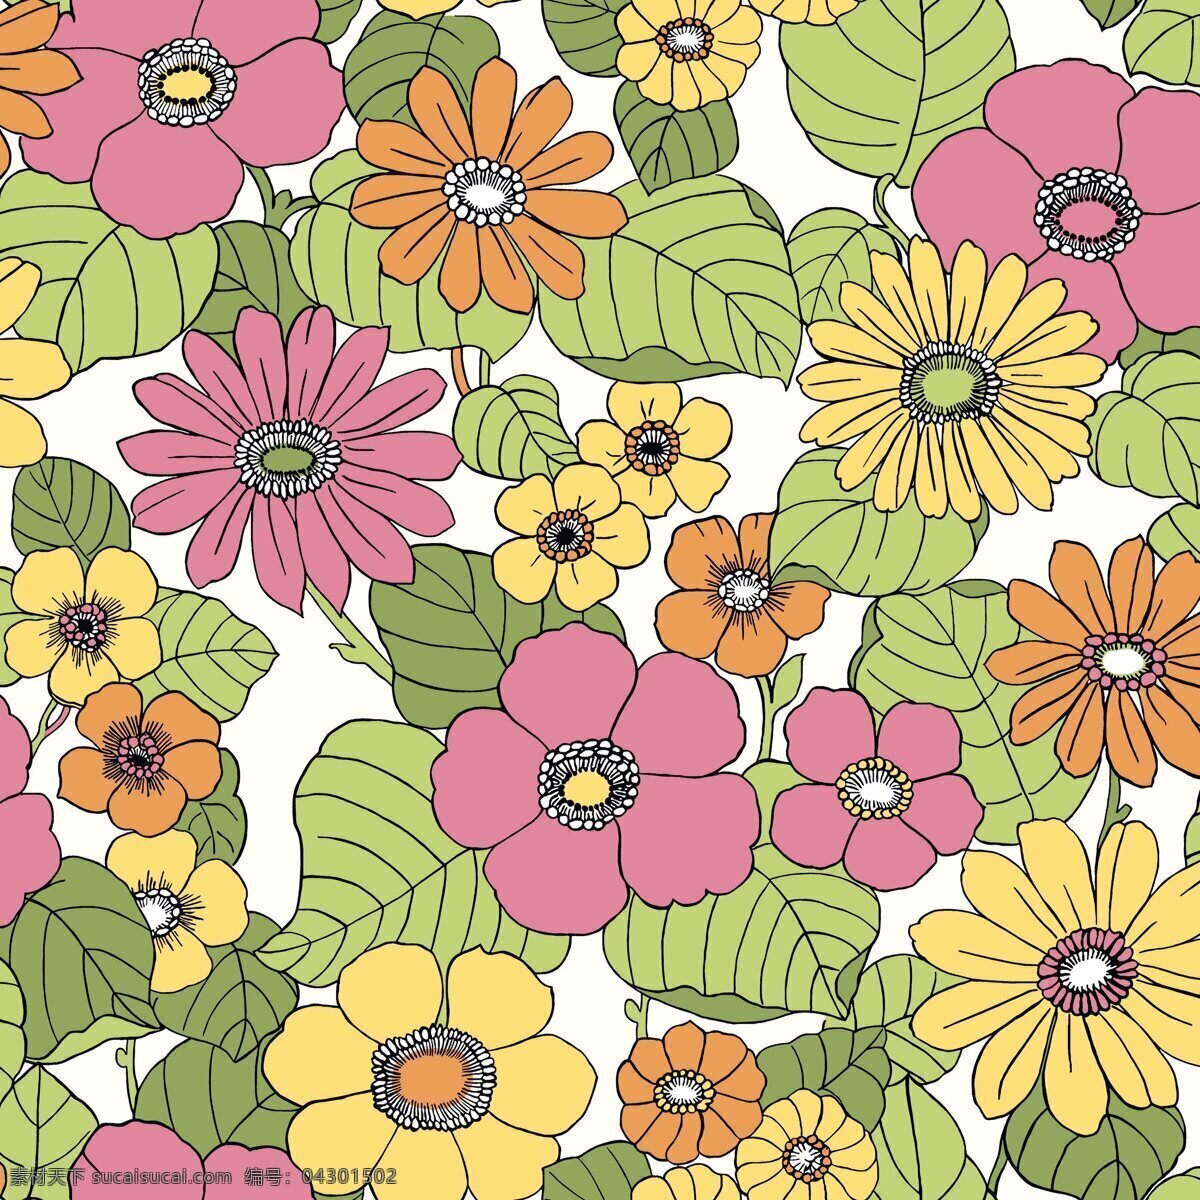 清新 自然 彩色 花朵 壁纸 图案 彩色布纹 彩色花朵 花朵壁纸 绿色树叶 植物壁纸